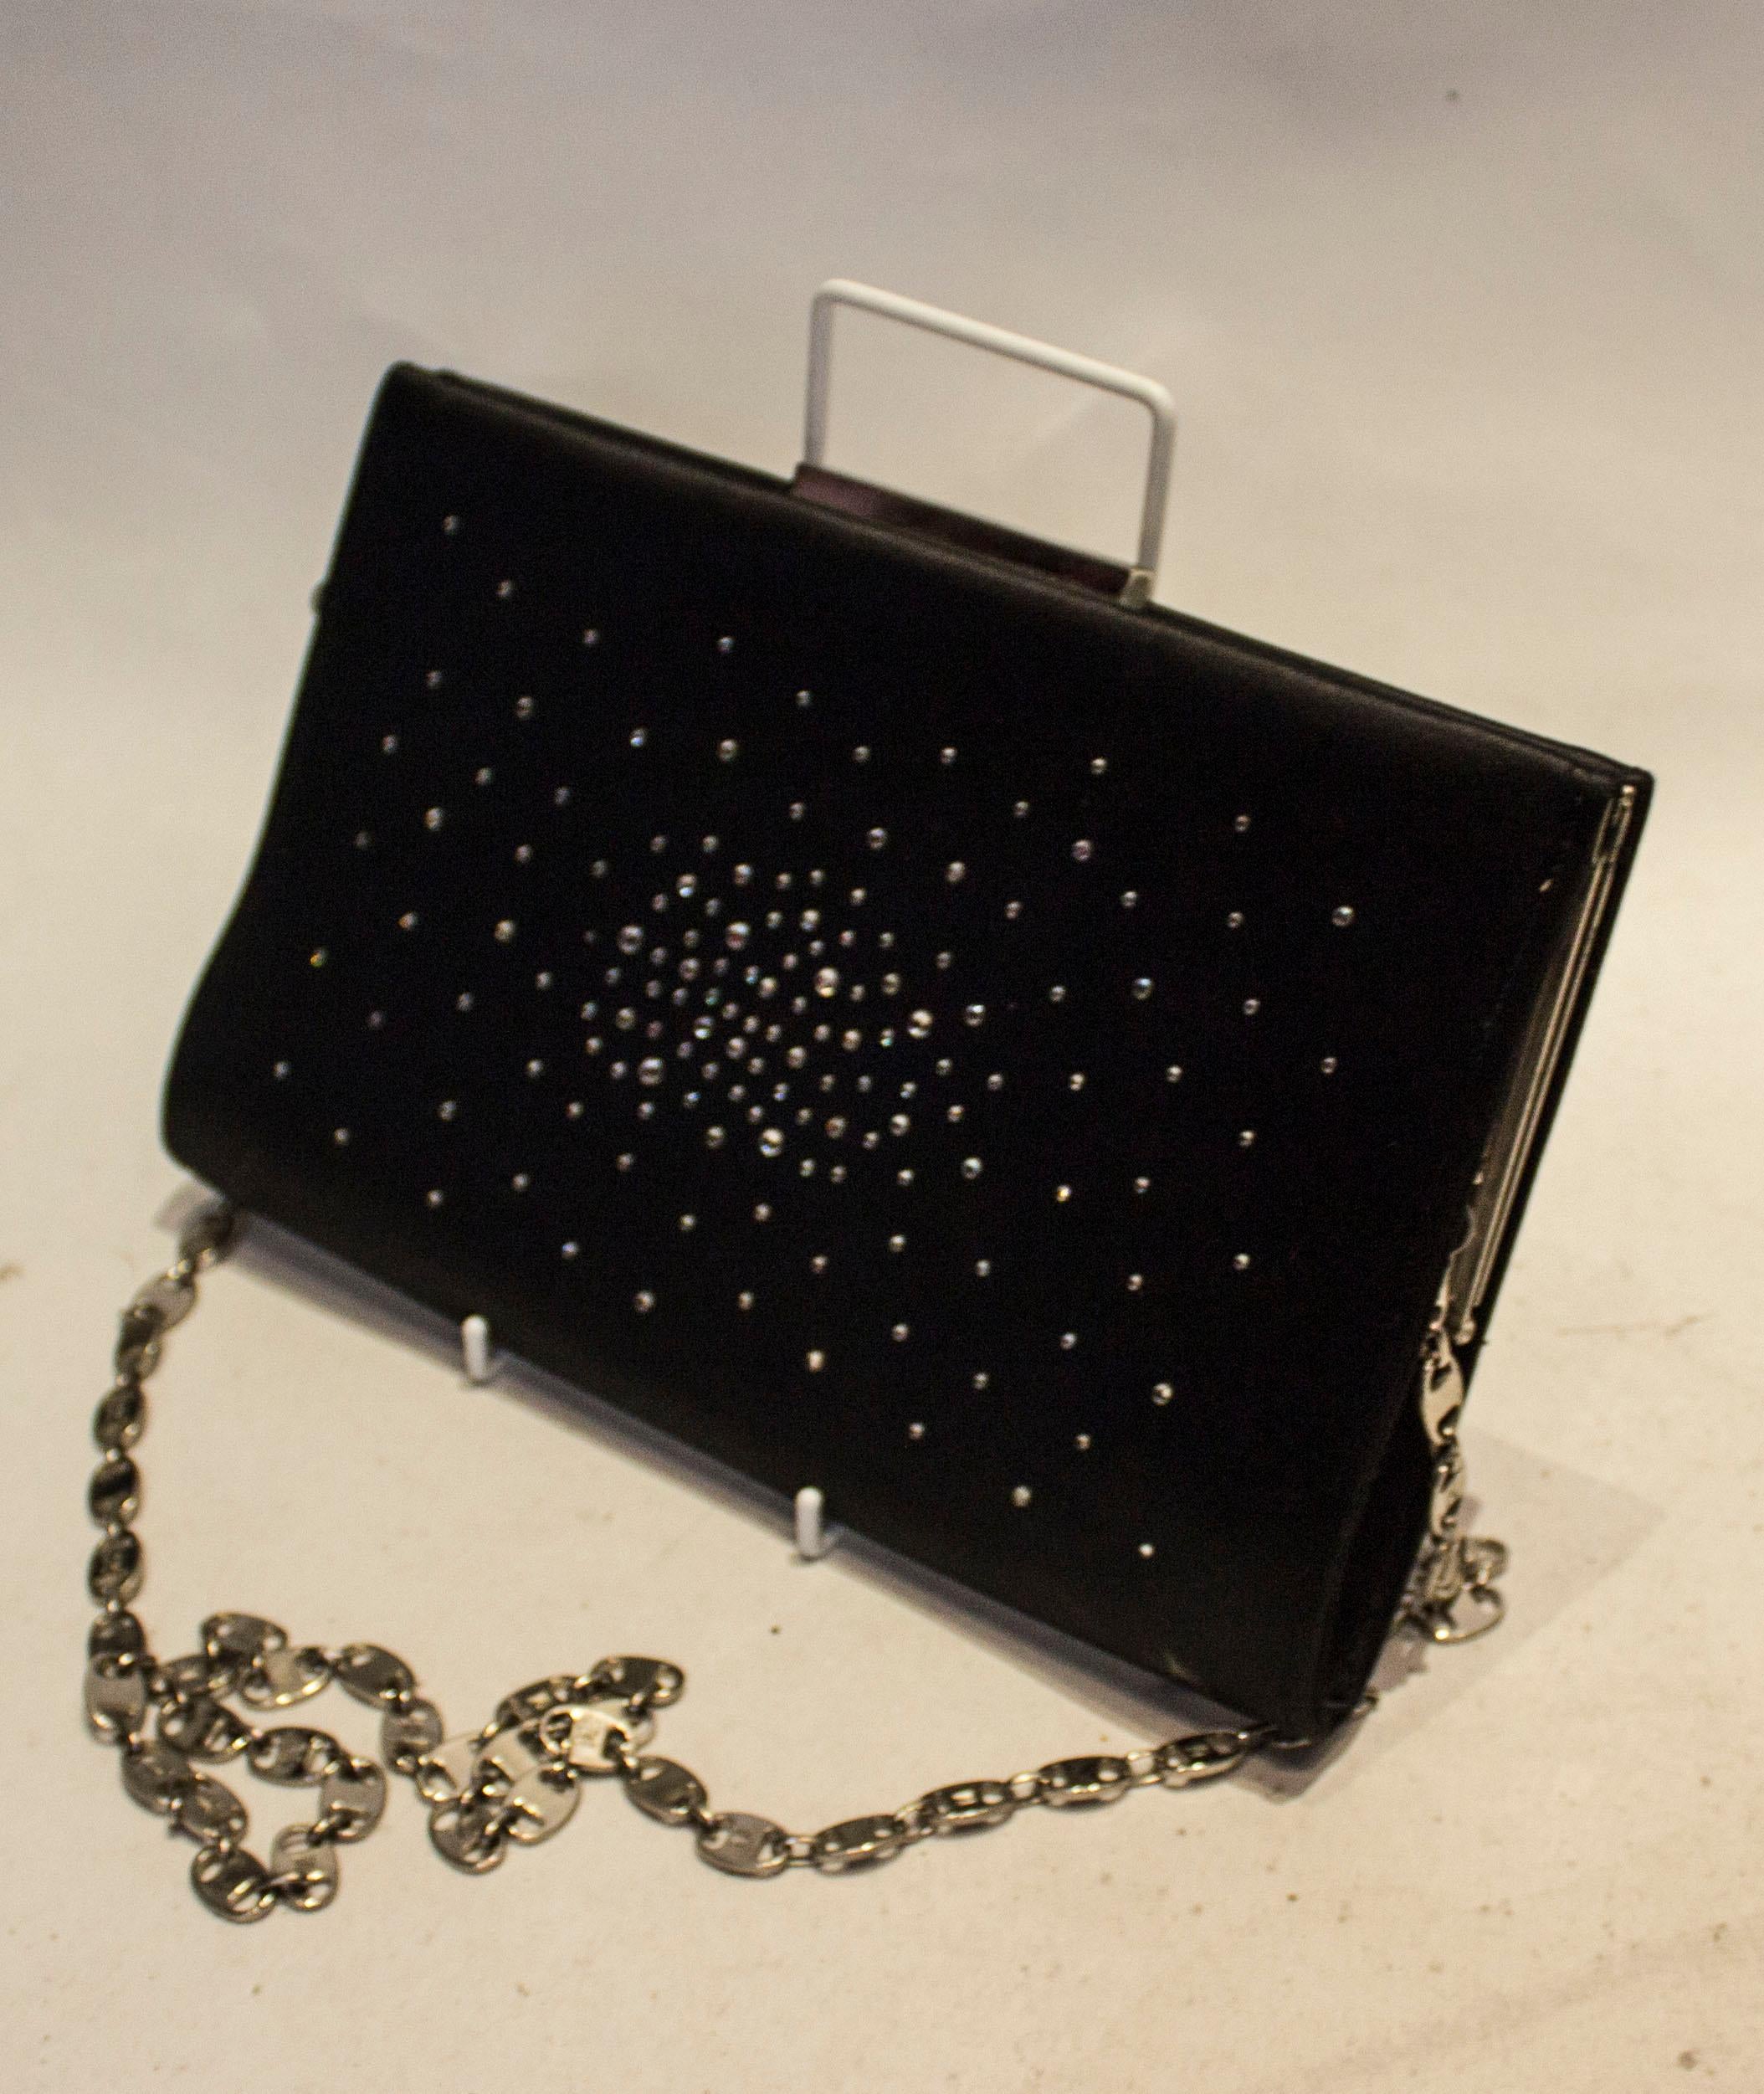 Un sac de soirée vintage chic de Brun Magli Couture. En satin noir recouvert de diamants sur les deux côtés, les sacs ont une poche intérieure et une ouverture sur le dessus.

Mesures : Largeur 10 1/2'', hauteur 6 1/2'', profondeur 1 1/2'', longueur